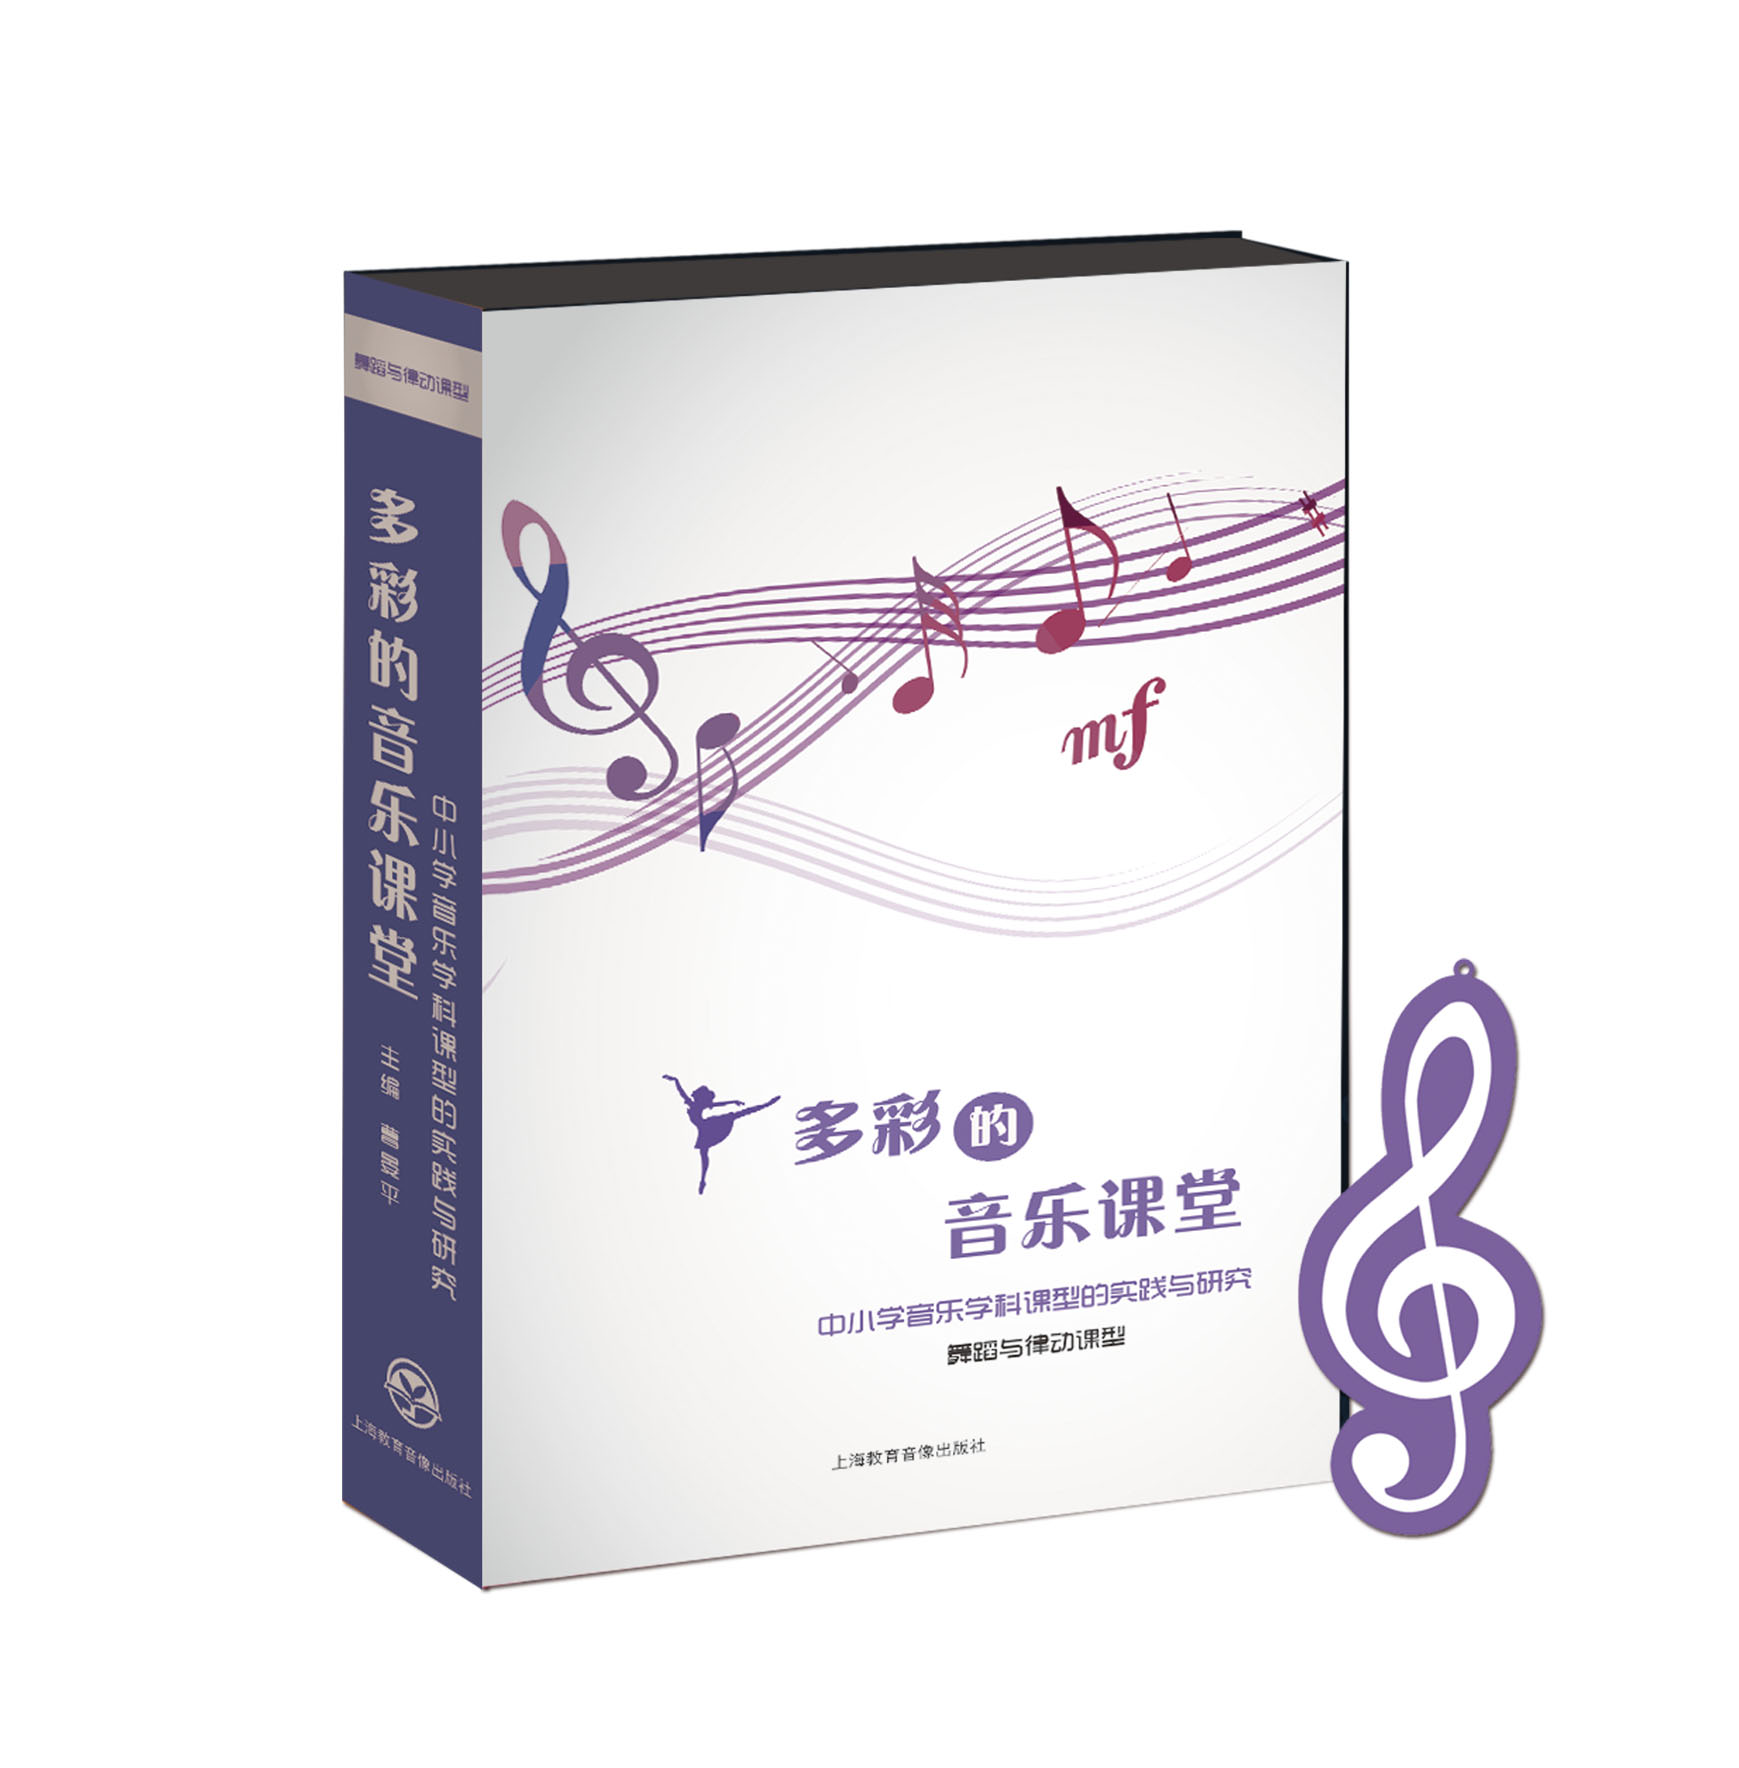 《多彩的音乐课堂——中小学音乐学科课型的实践与研究》